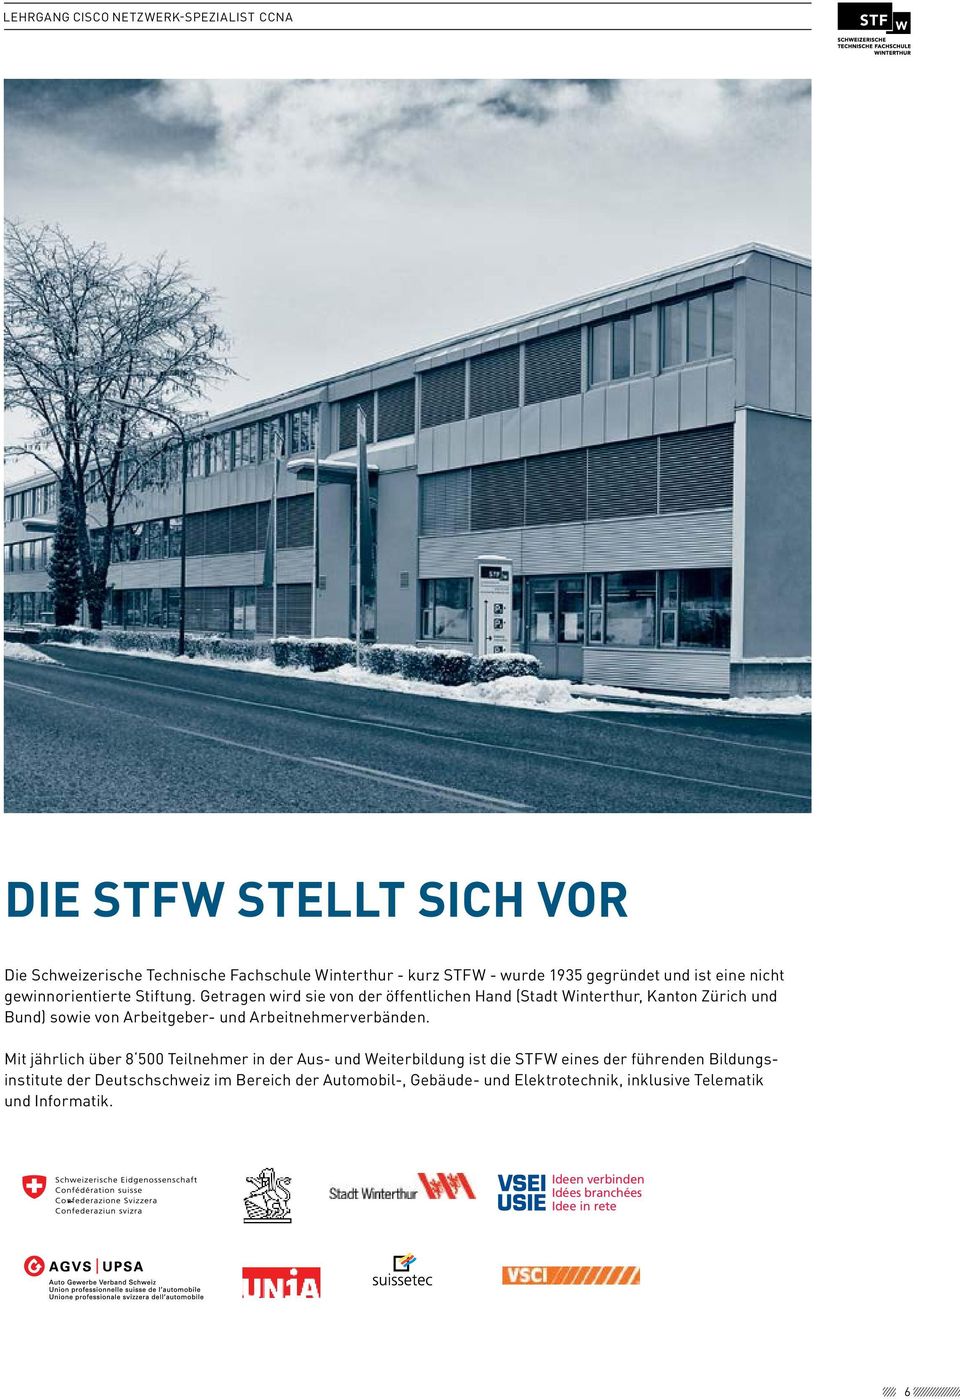 Die STFW stellt sich vor Mit jährlich über 8 500 Teilnehmer in der Aus- und Weiterbildung ist die STFW eines der führenden Bildungsinstitute Die Schweizerische der Deutschschweiz Technische im